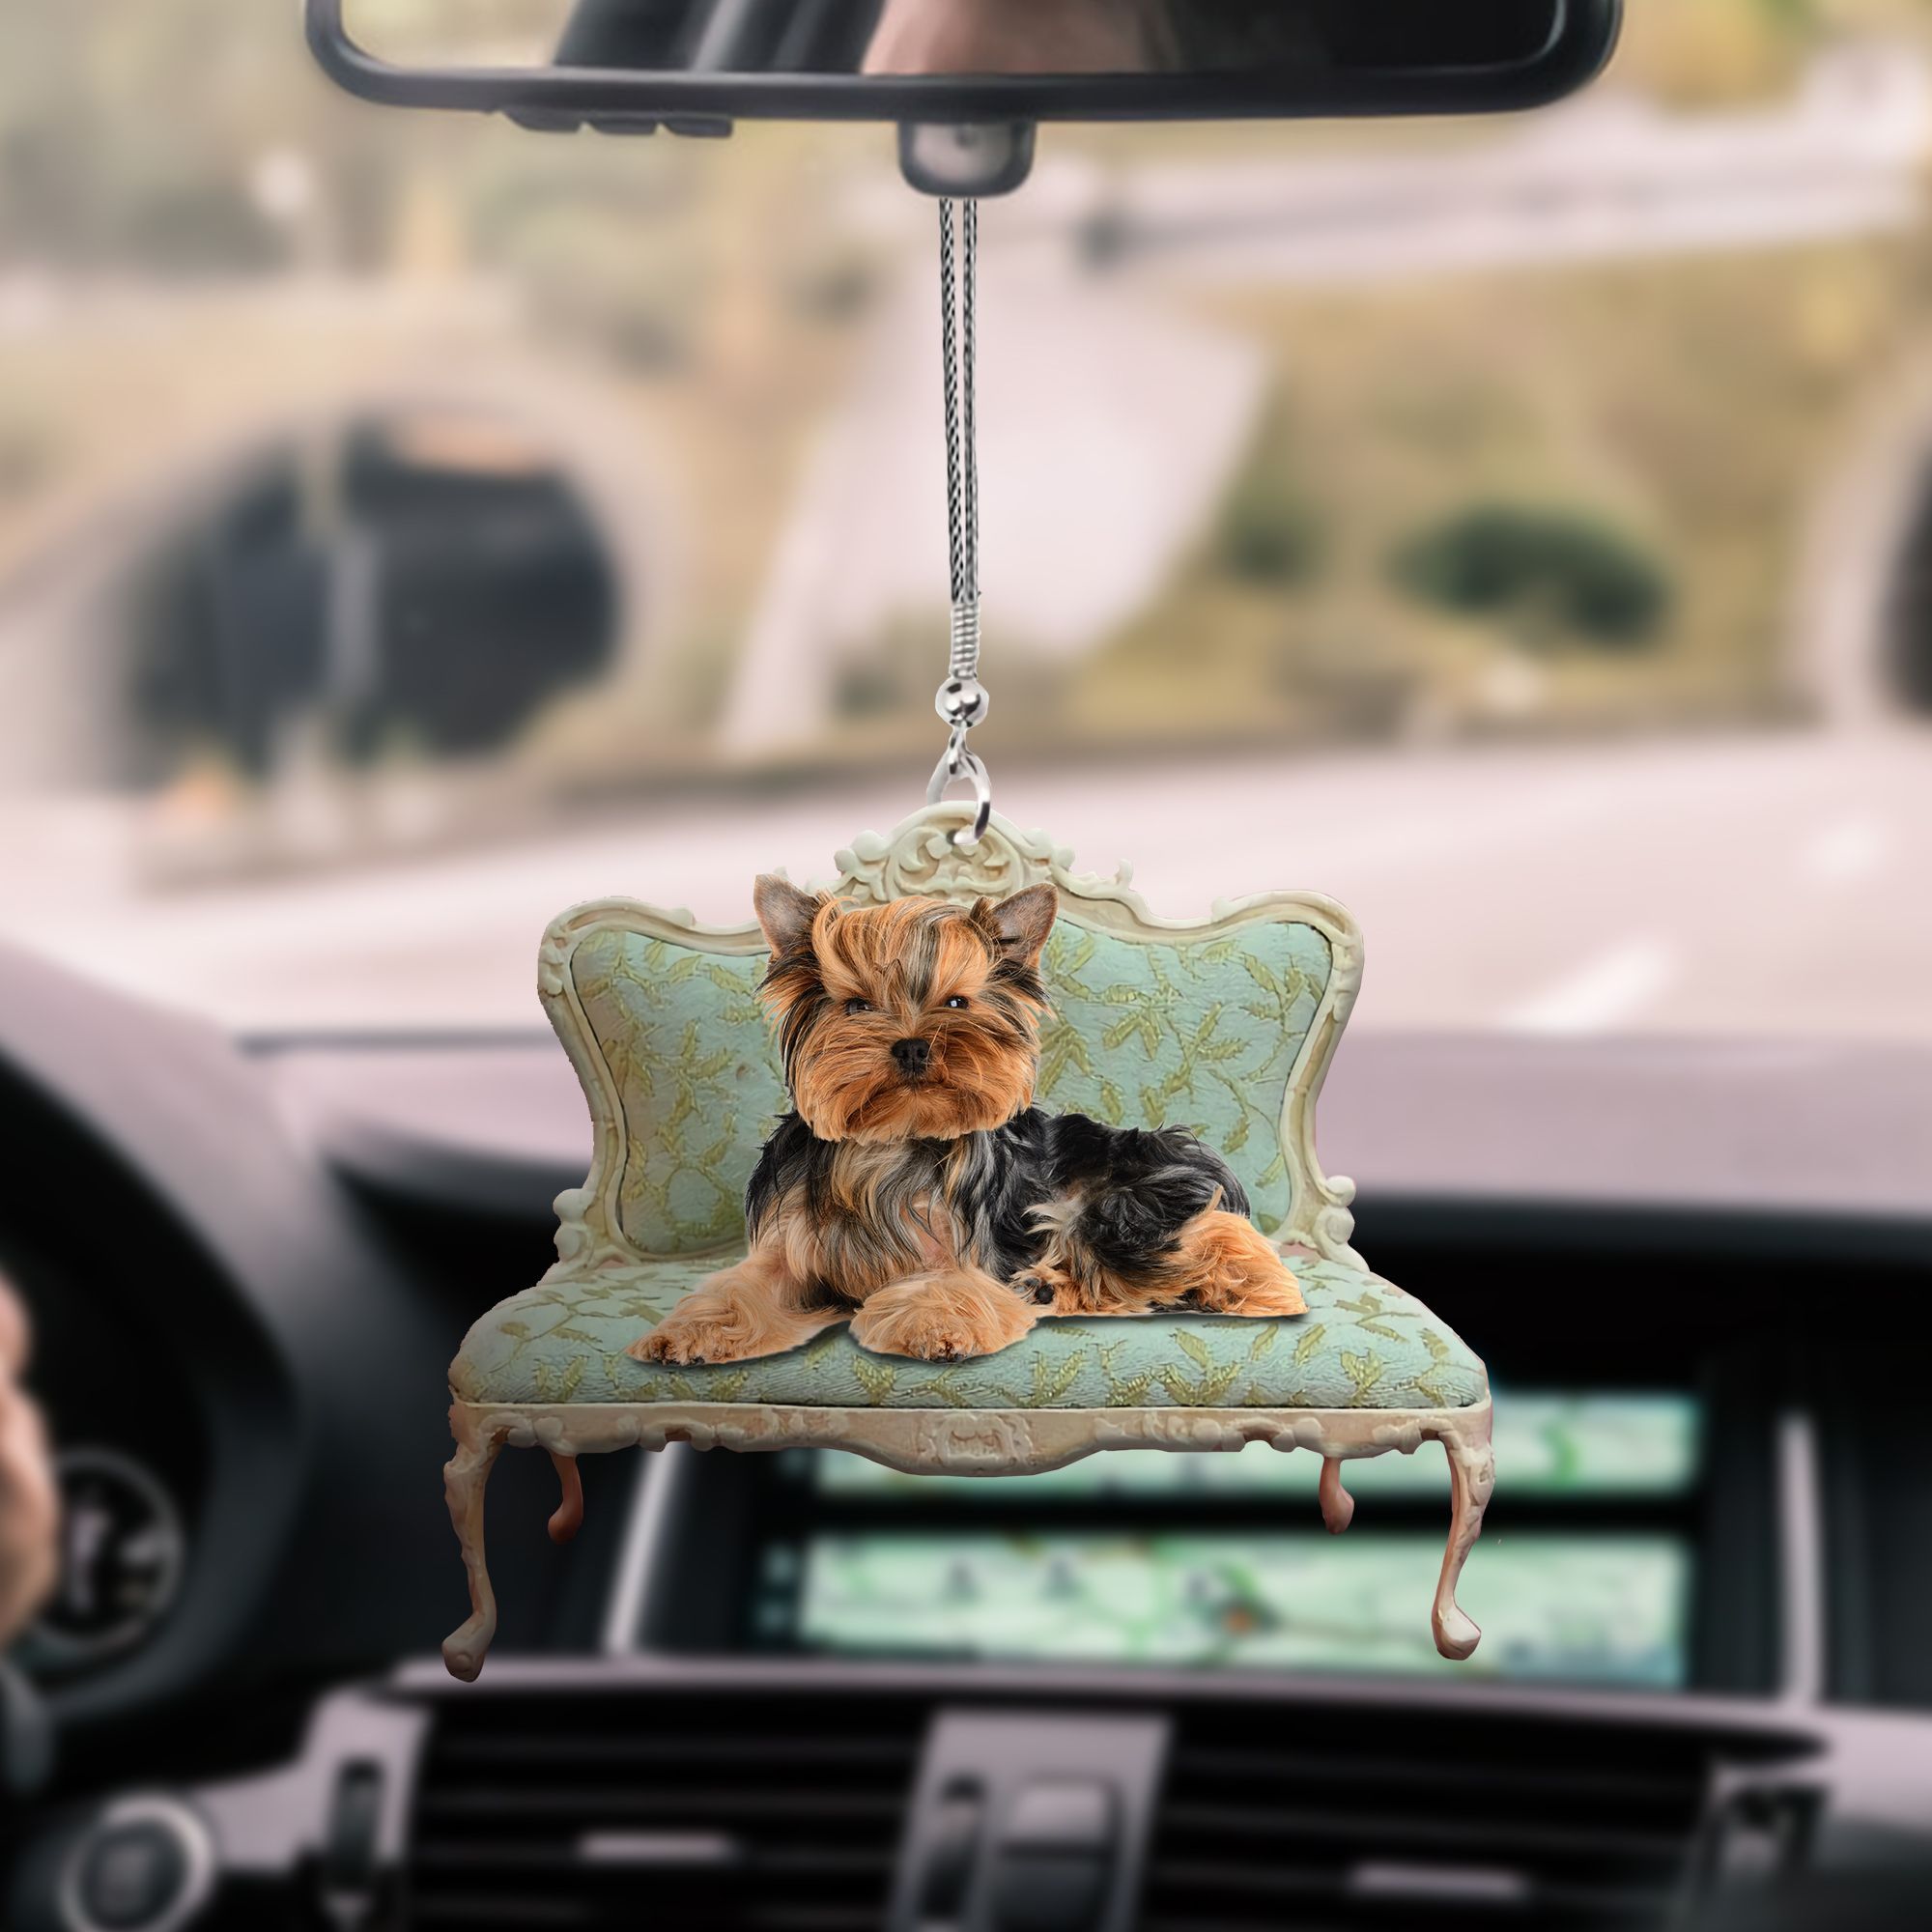 yorkshire-terrier-lying-ks114-ntt070997-nct-car-hanging-ornament